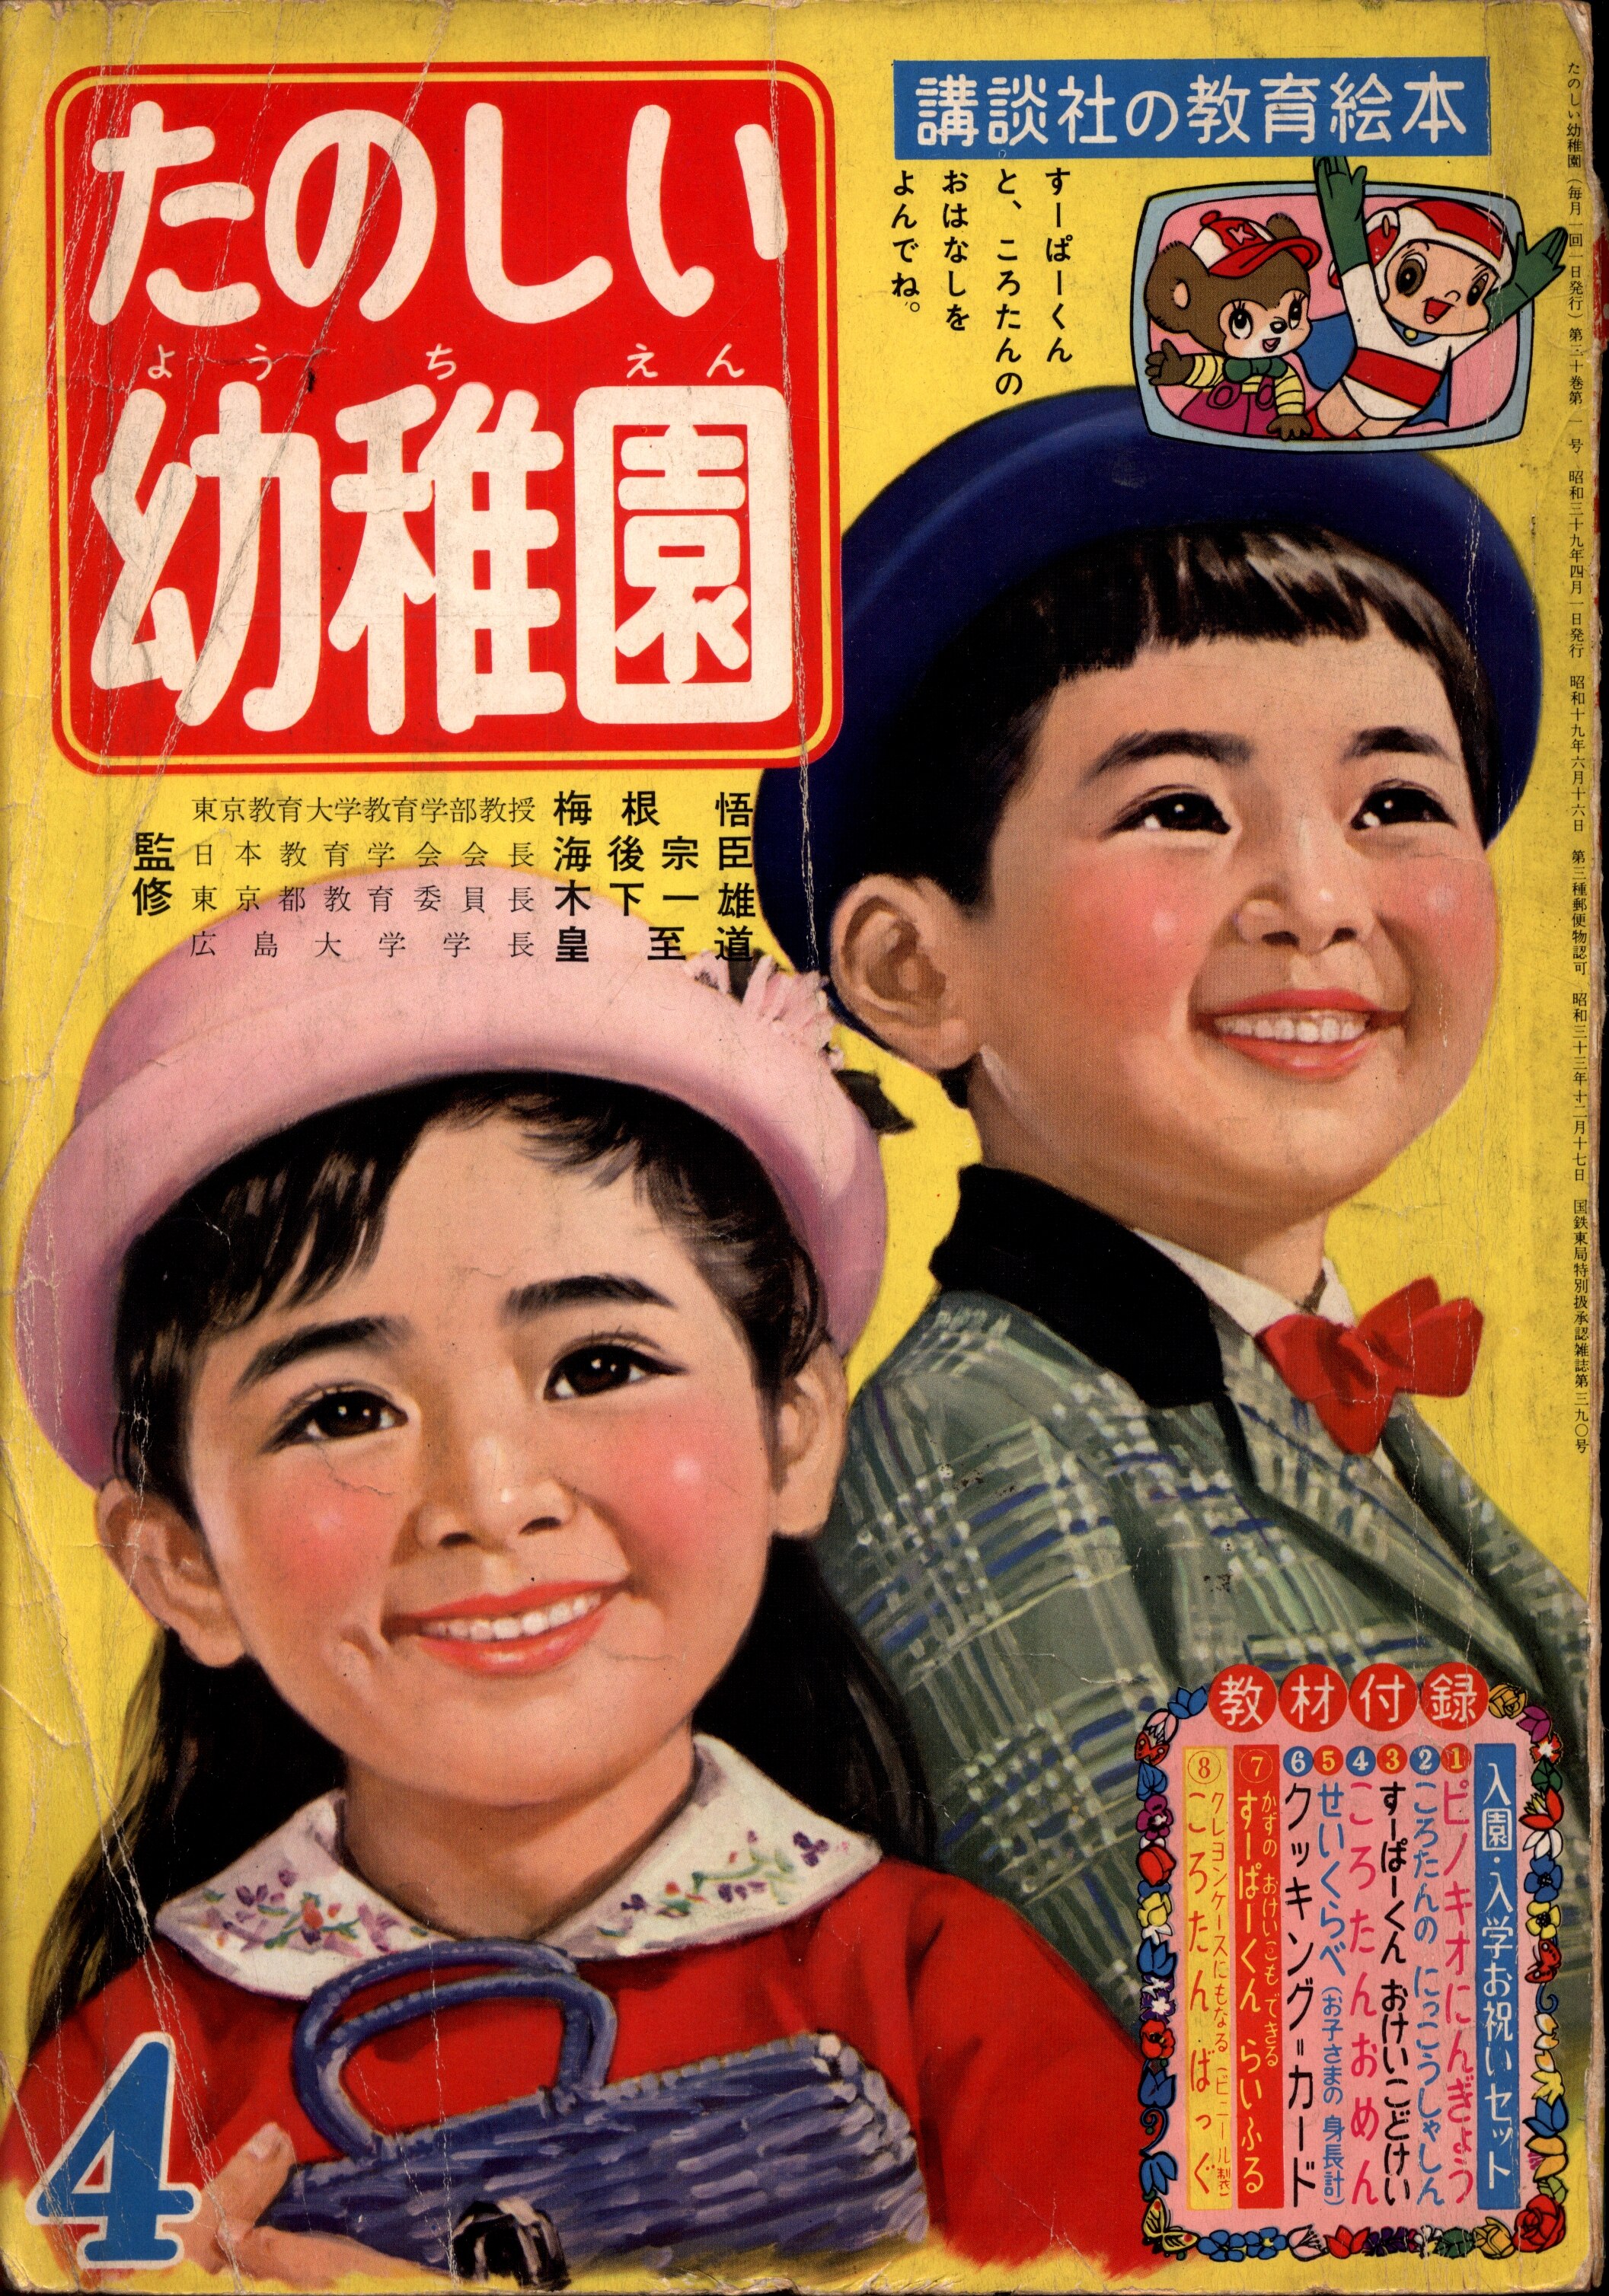 講談社 1964年(昭和39年)の漫画雑誌 たのしい幼稚園1964年(昭和39年)04